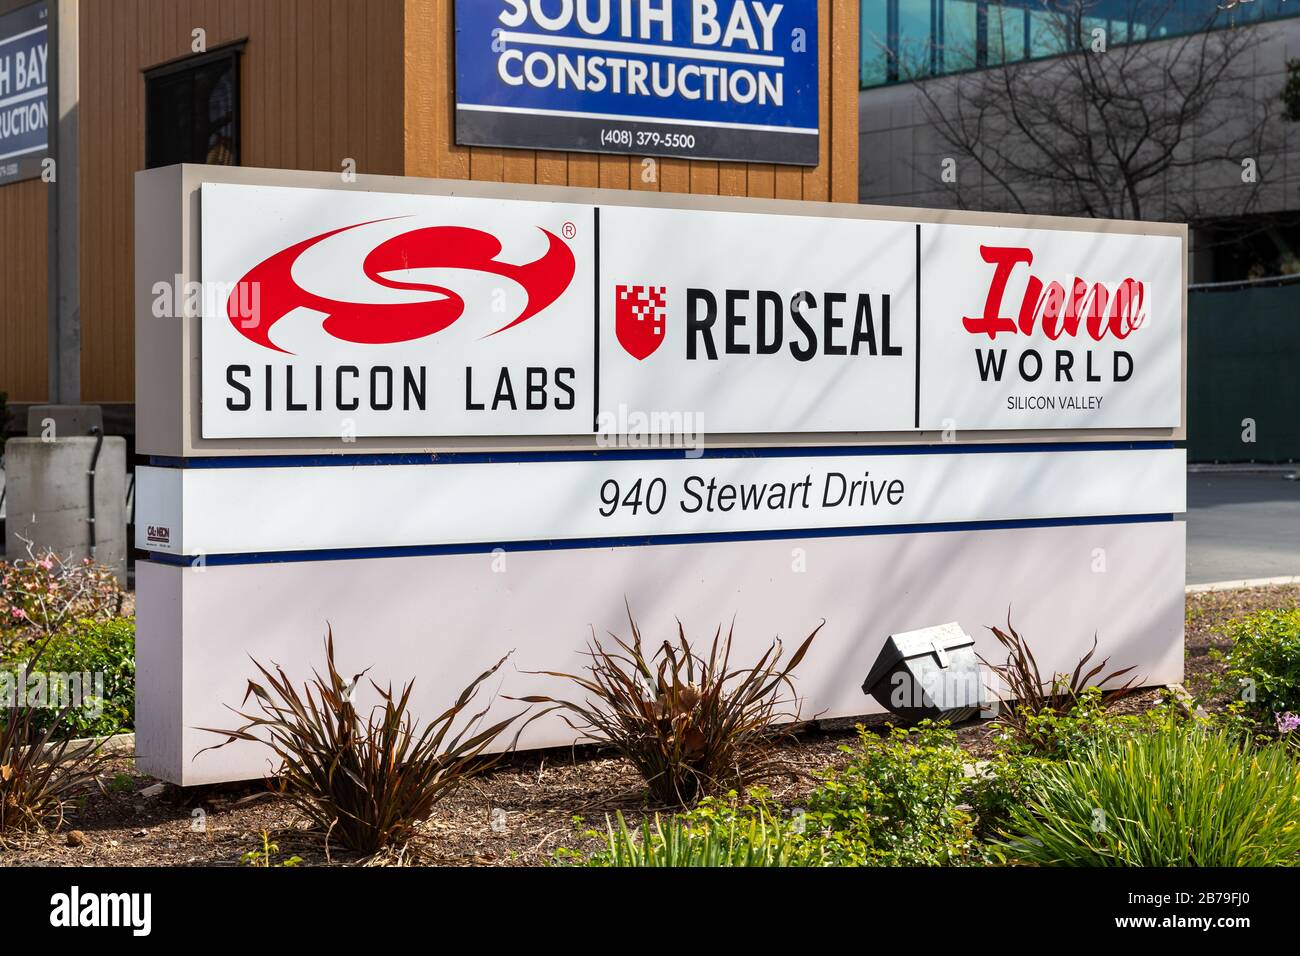 Silizium Labs, RedSeal, Inno World Silicon Valley, Schild, Stewart Drive, Sunnyvale, Kalifornien, USA Stockfoto